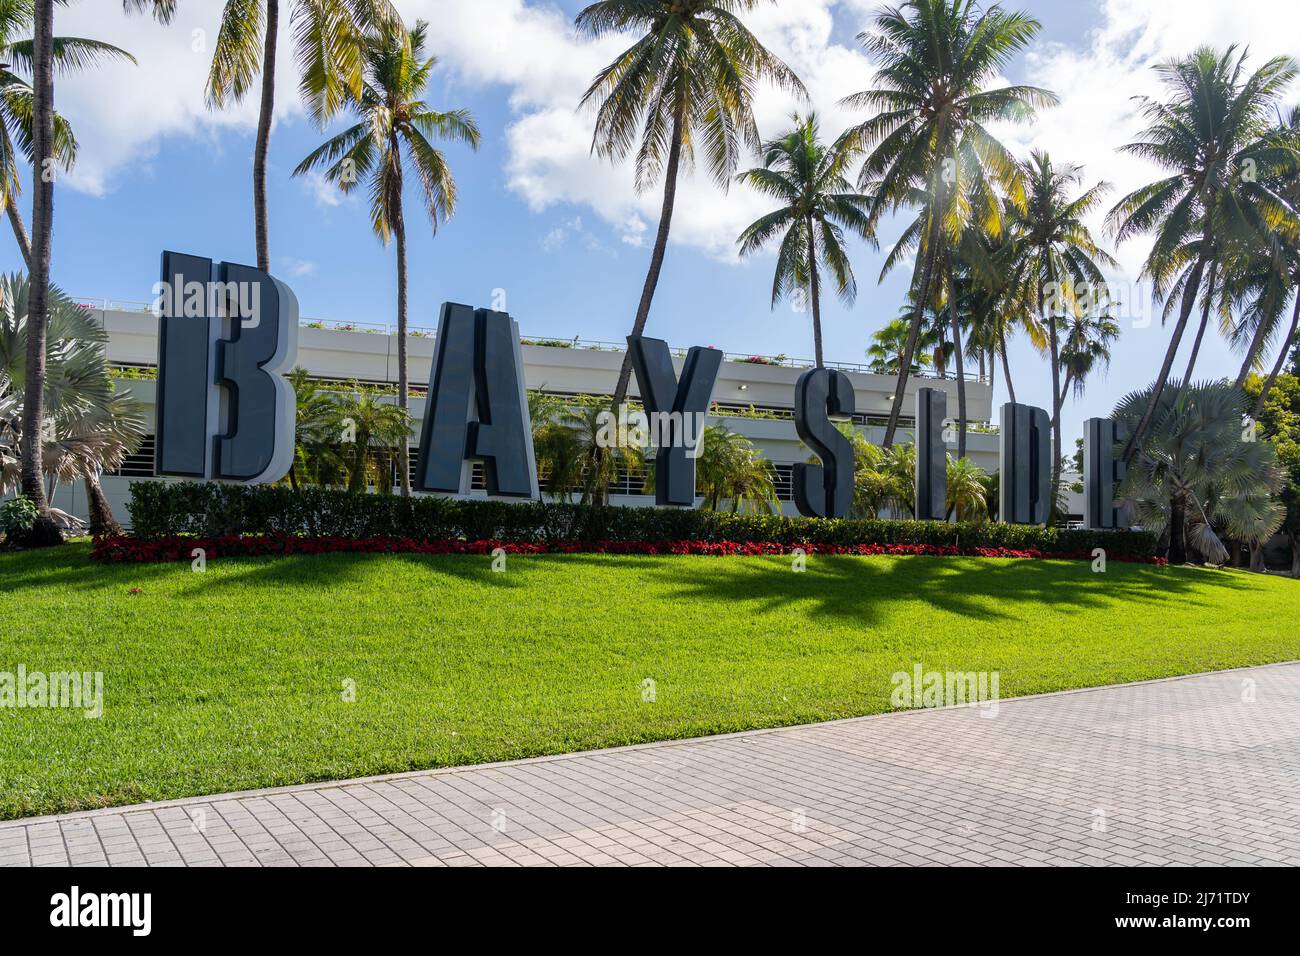 Miami, Florida, USA - 2 gennaio 2022: Il cartello Bayside è mostrato a Miami, Florida, USA. Il Bayside Marketplace è un centro commerciale all'aperto a due piani. Foto Stock